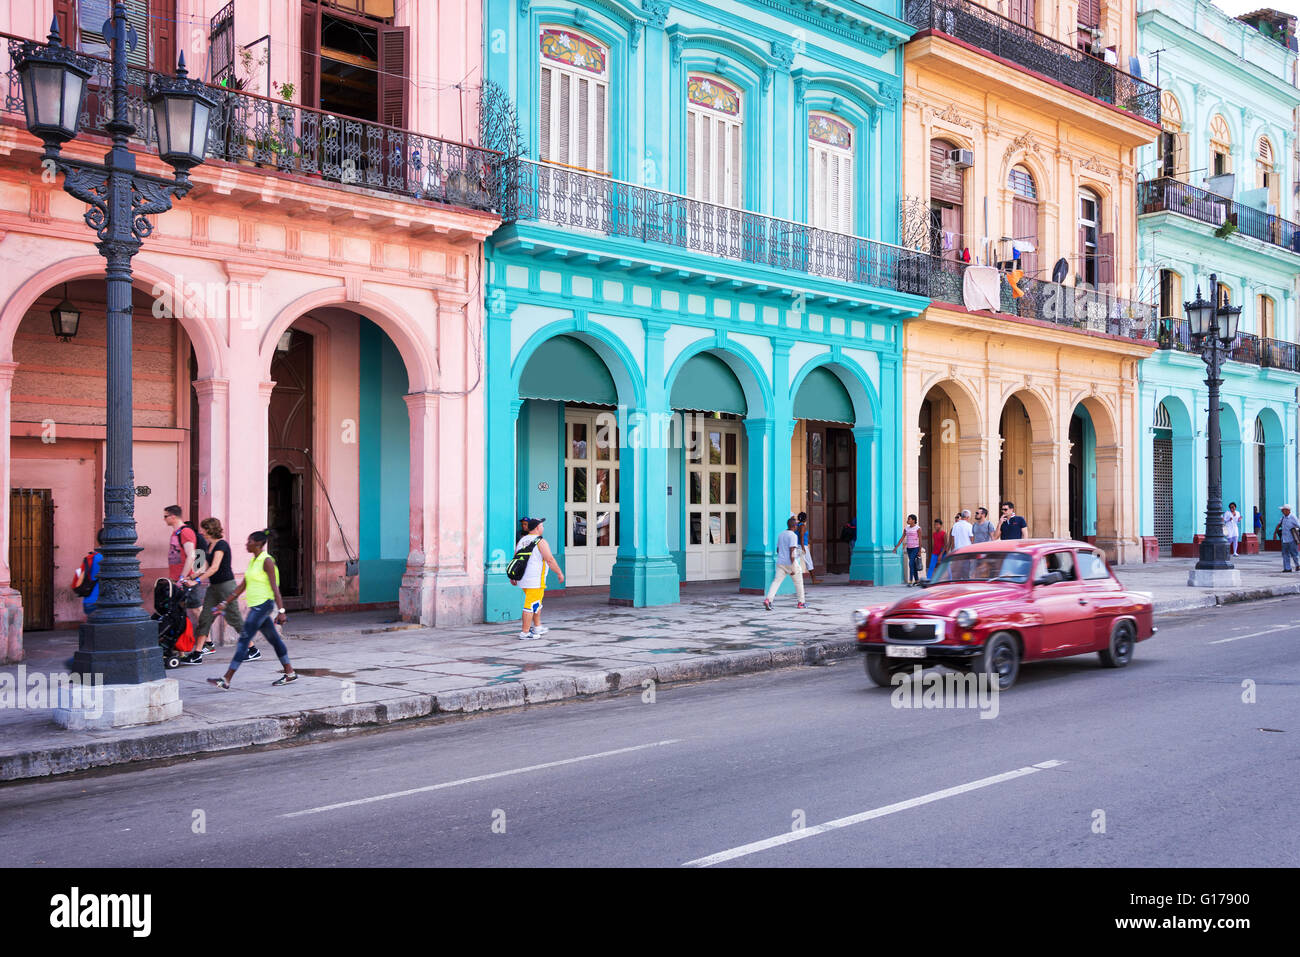 La HAVANE, CUBA - 18 avril : Classic vintage car et bâtiments coloniaux colorés dans la rue principale de la vieille ville de La Havane, le 18 avril, 2016 Banque D'Images